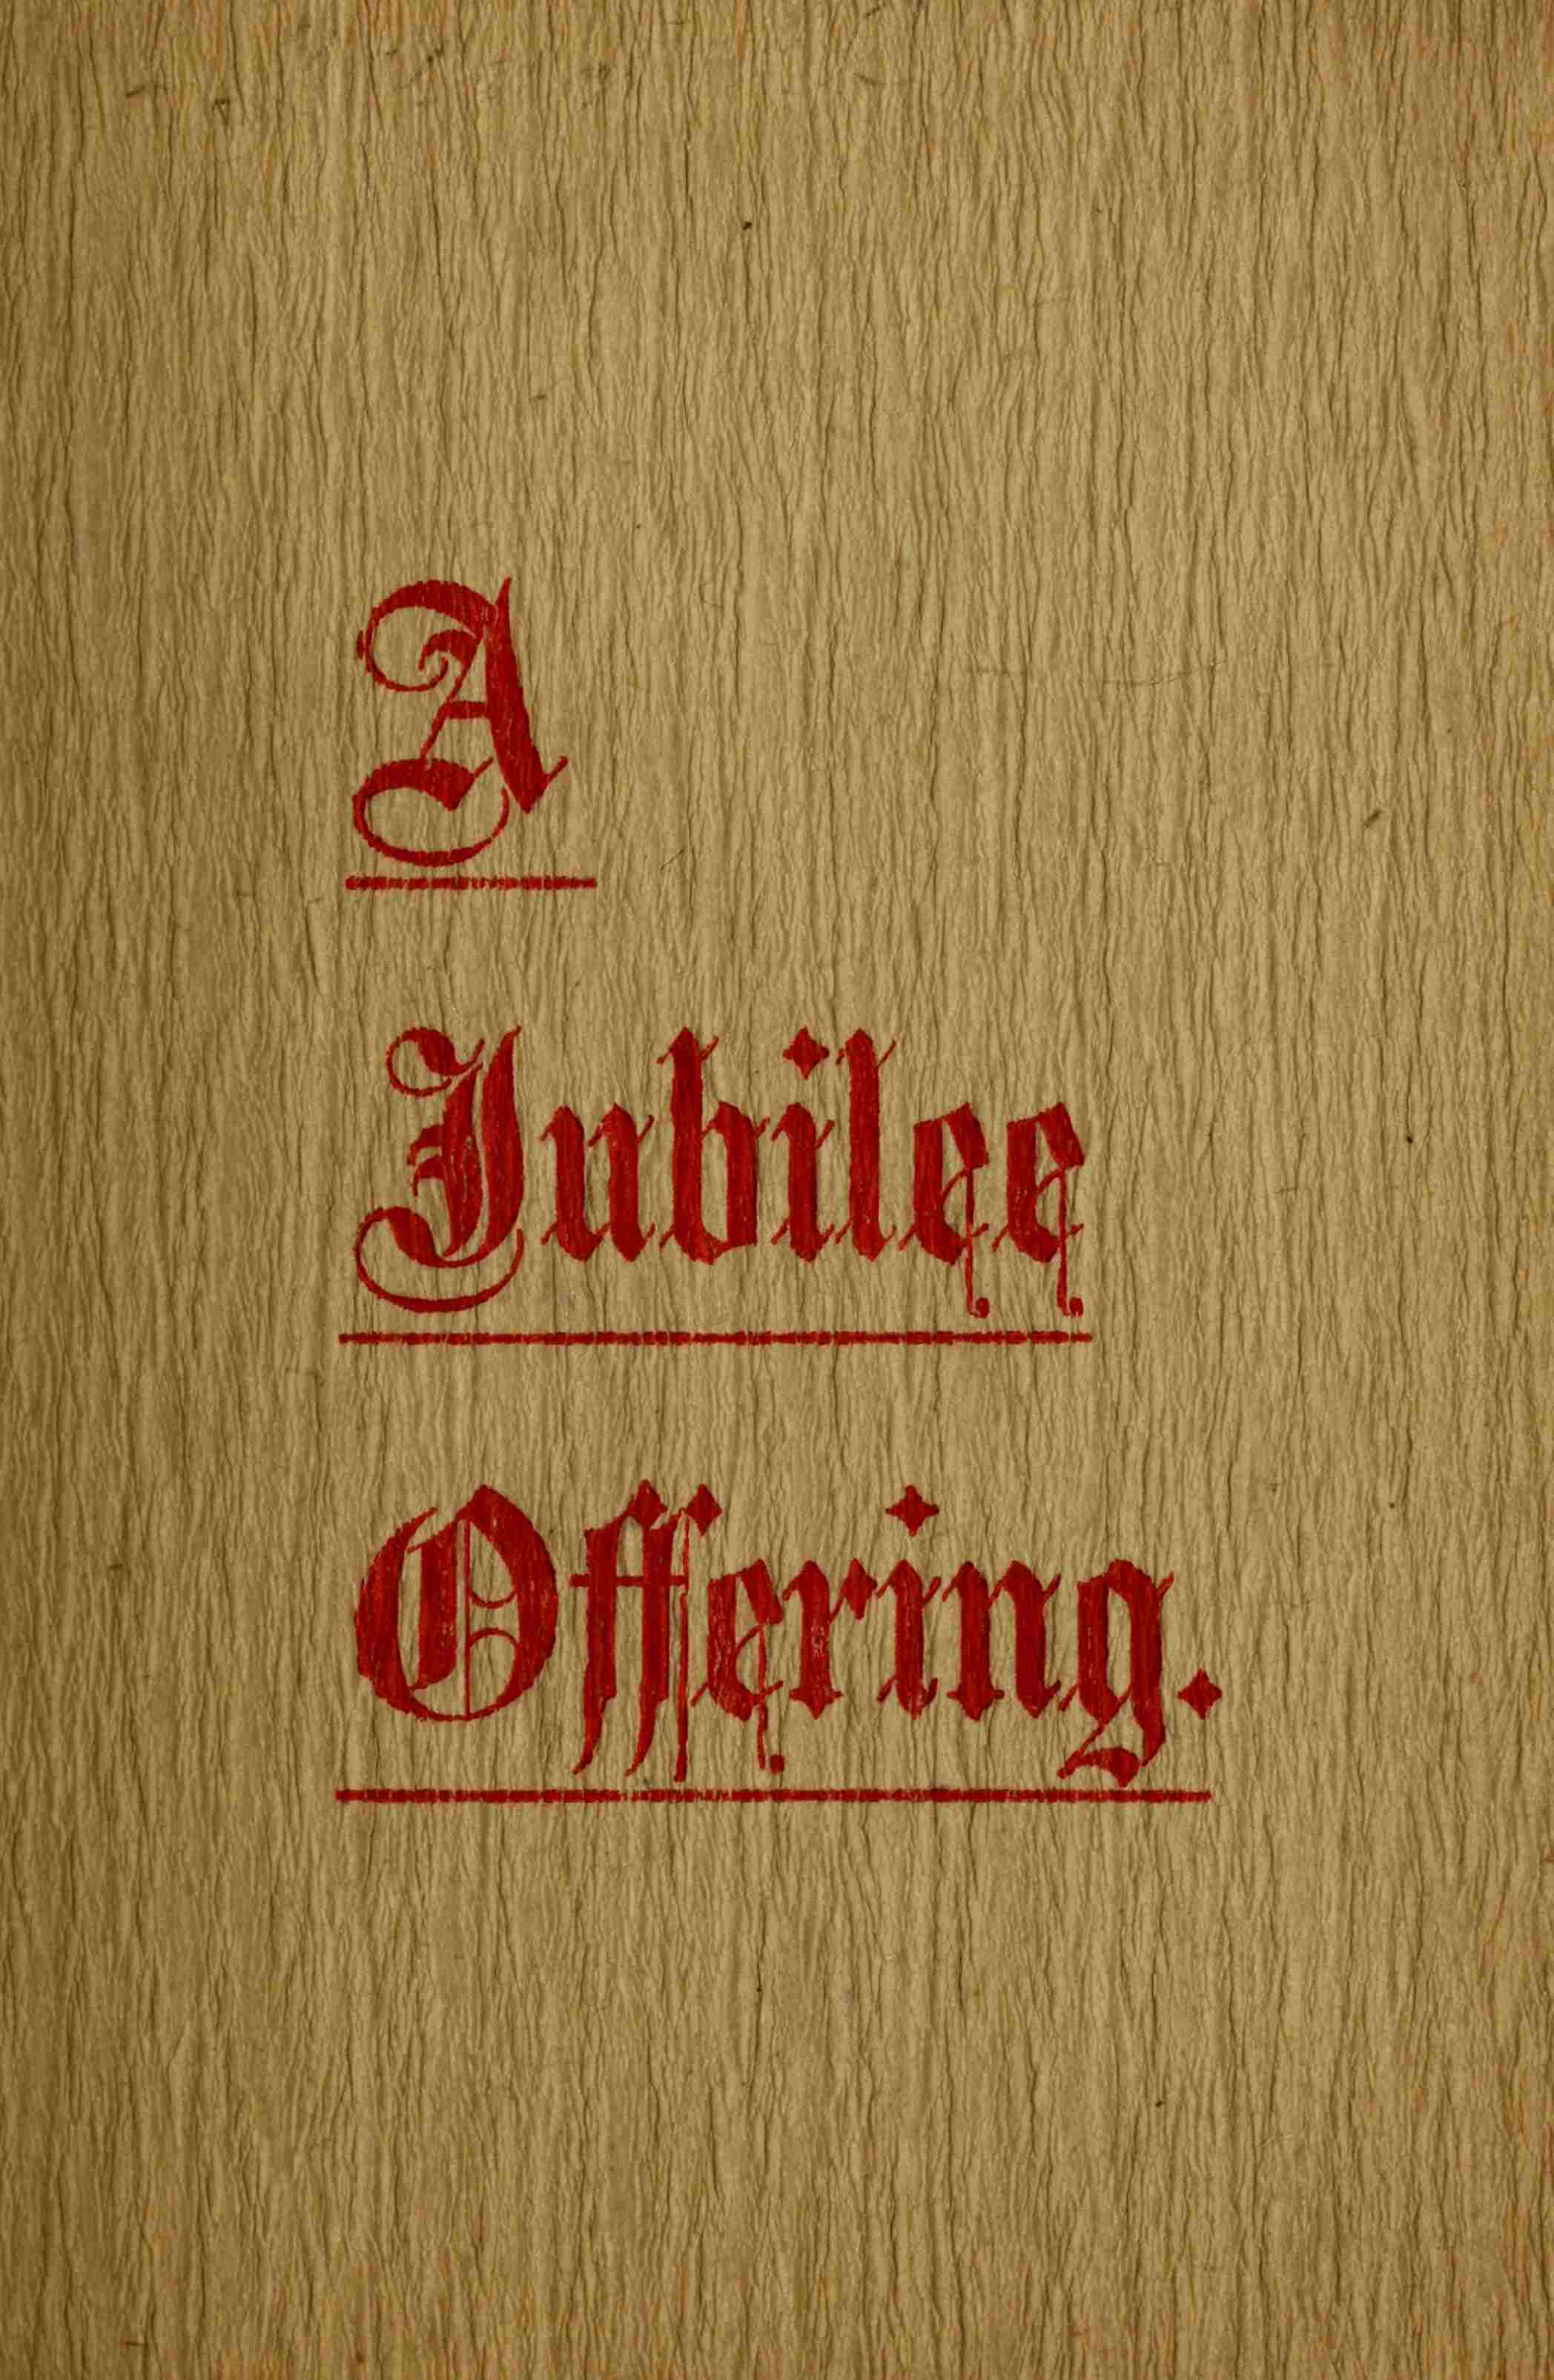 A
Jubilee
Offering.